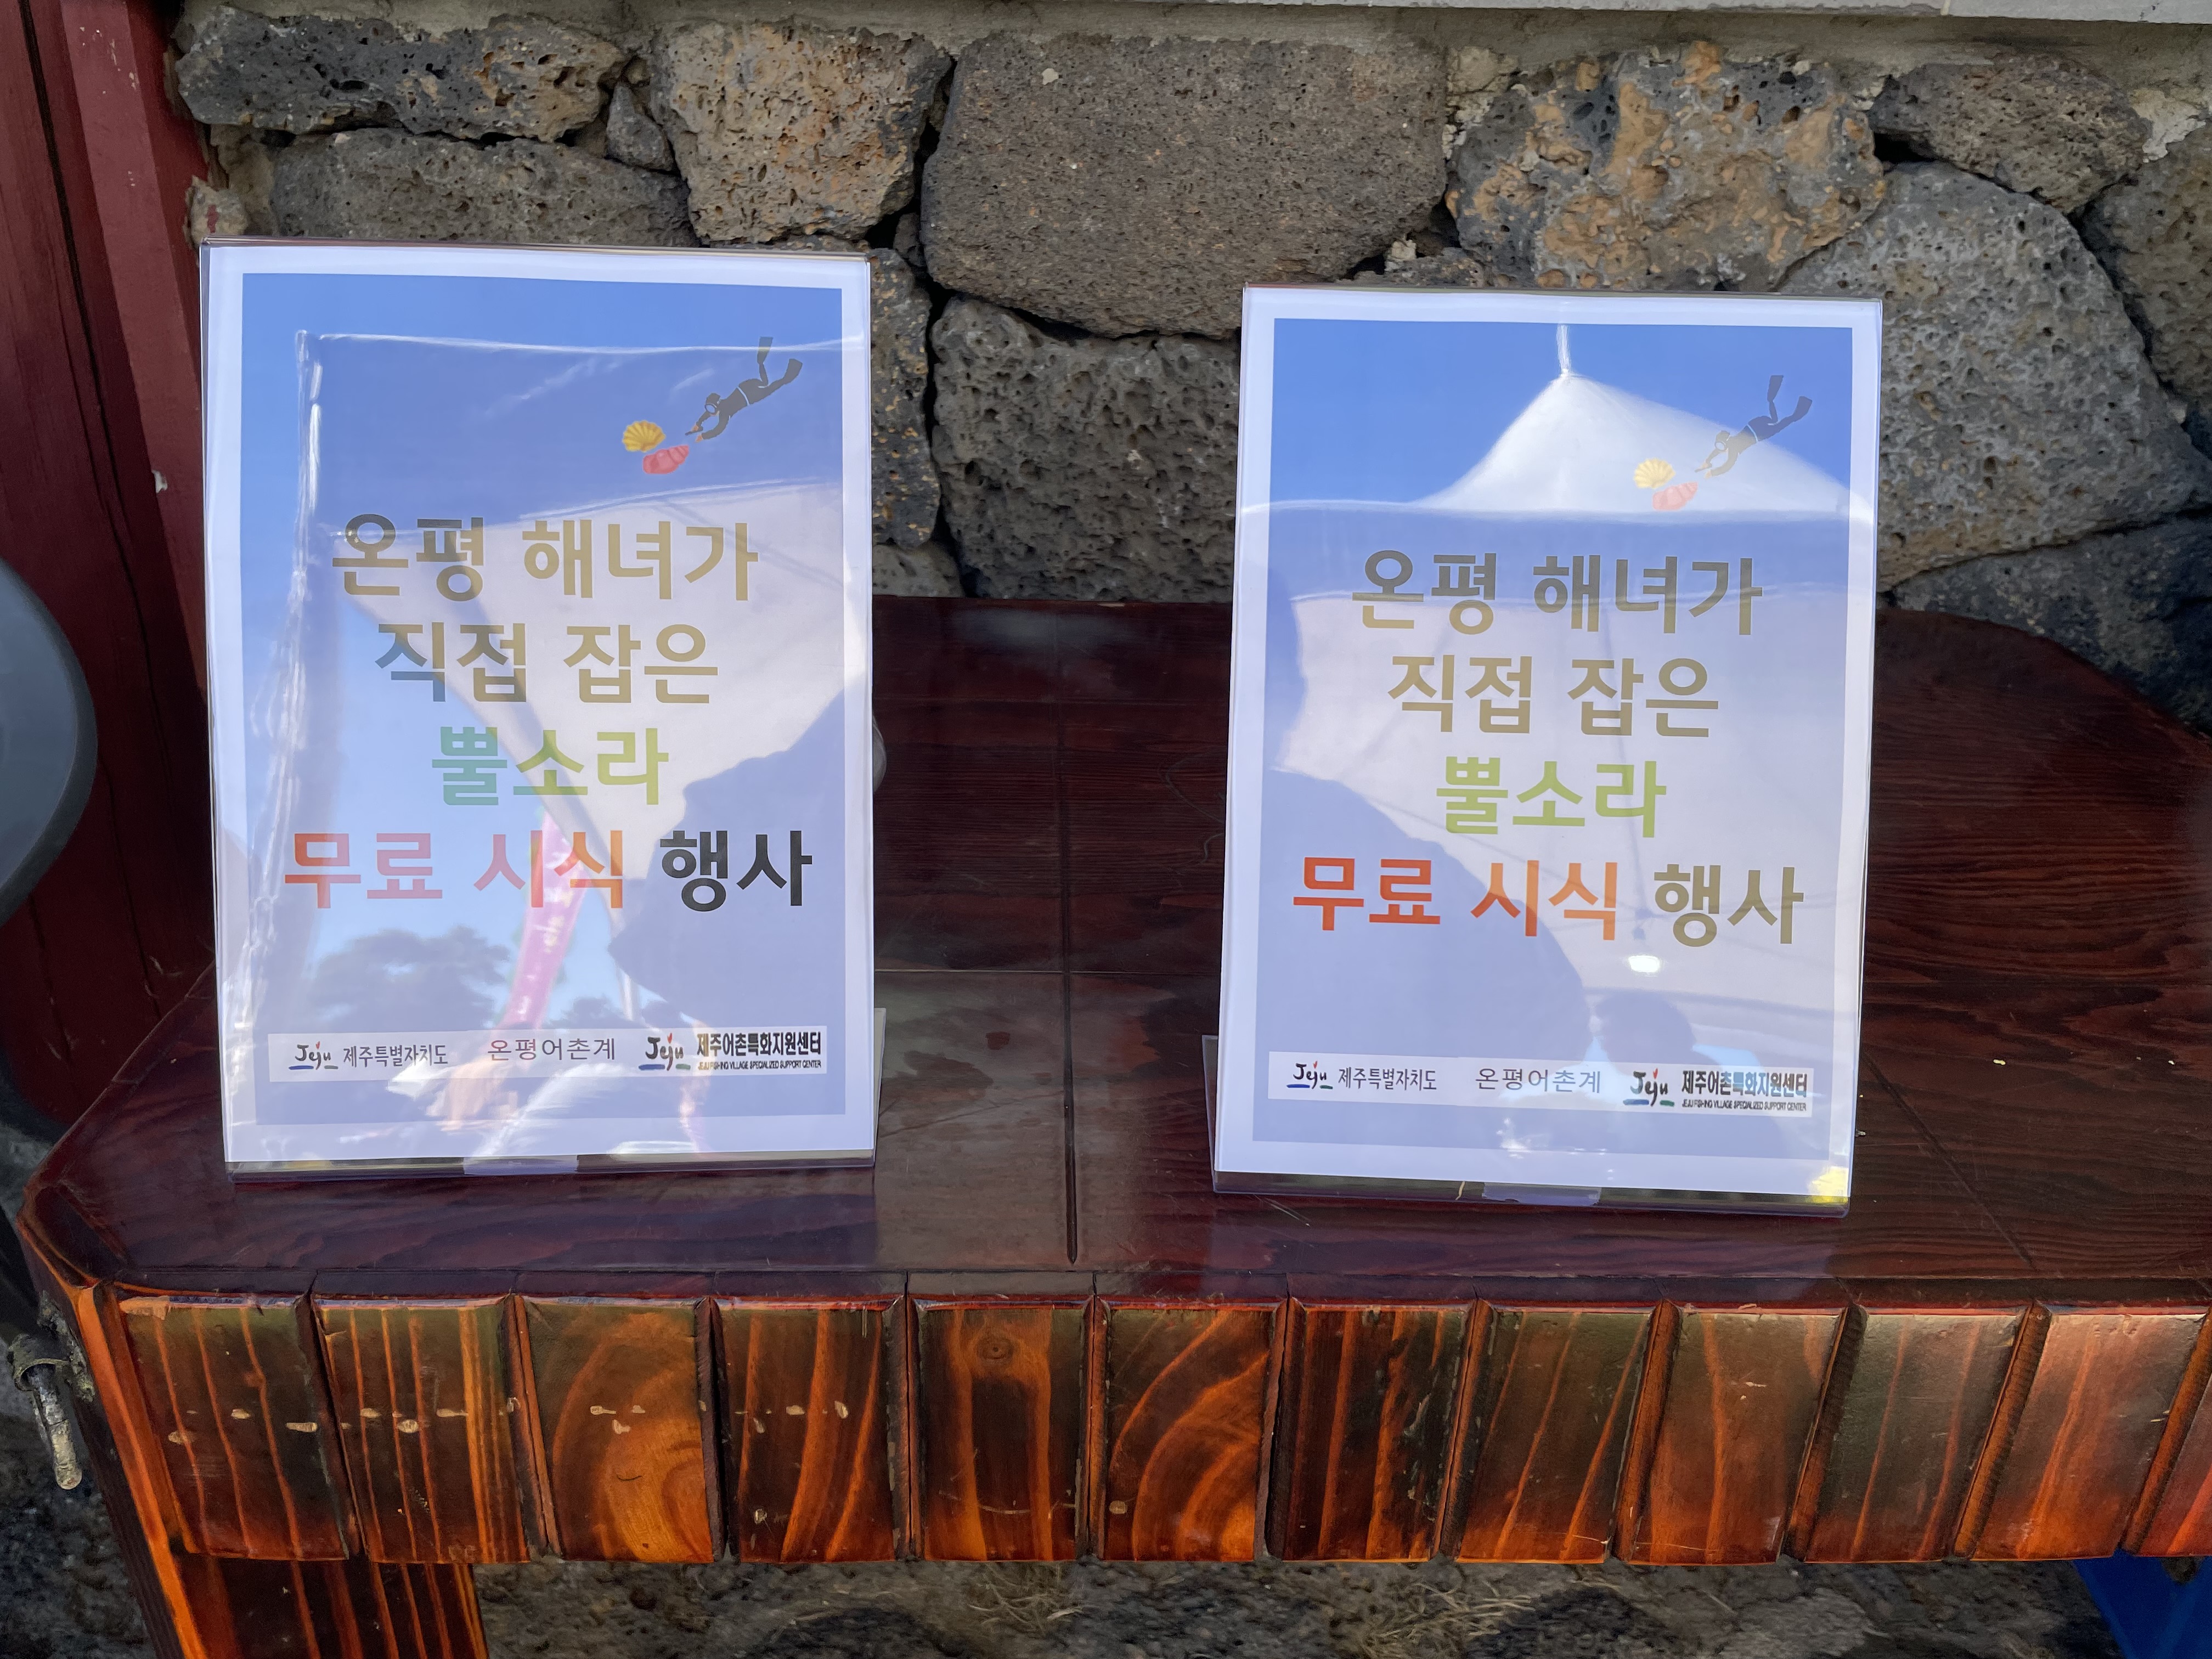 온평 해녀가 직접 잡은 뿔소라 무료 시식 행사, Jeju 제주특별자치도, 온평어촌계, Jeju 제주어촌특화지원센터 설명  이미지 2개